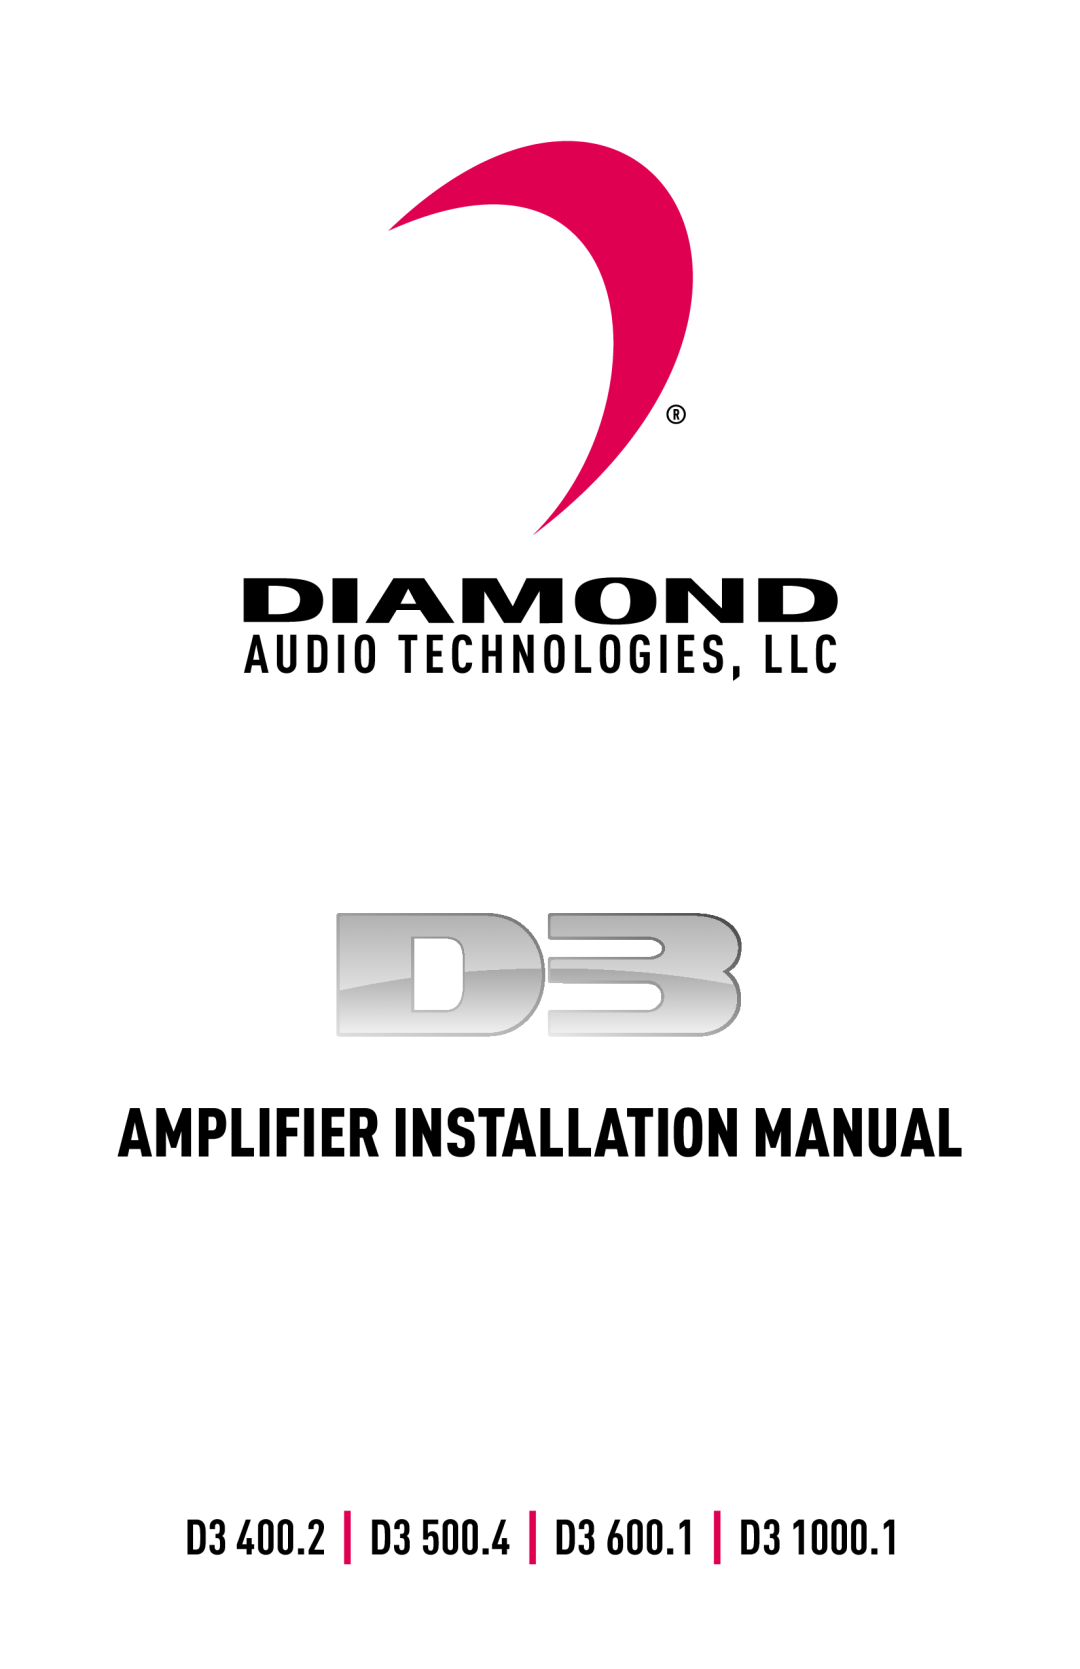 Diamond Audio Technology D3 1000.1 installation manual Amplifier Installation Manual, D3 400.2 D3 500.4 D3 600.1 D3 